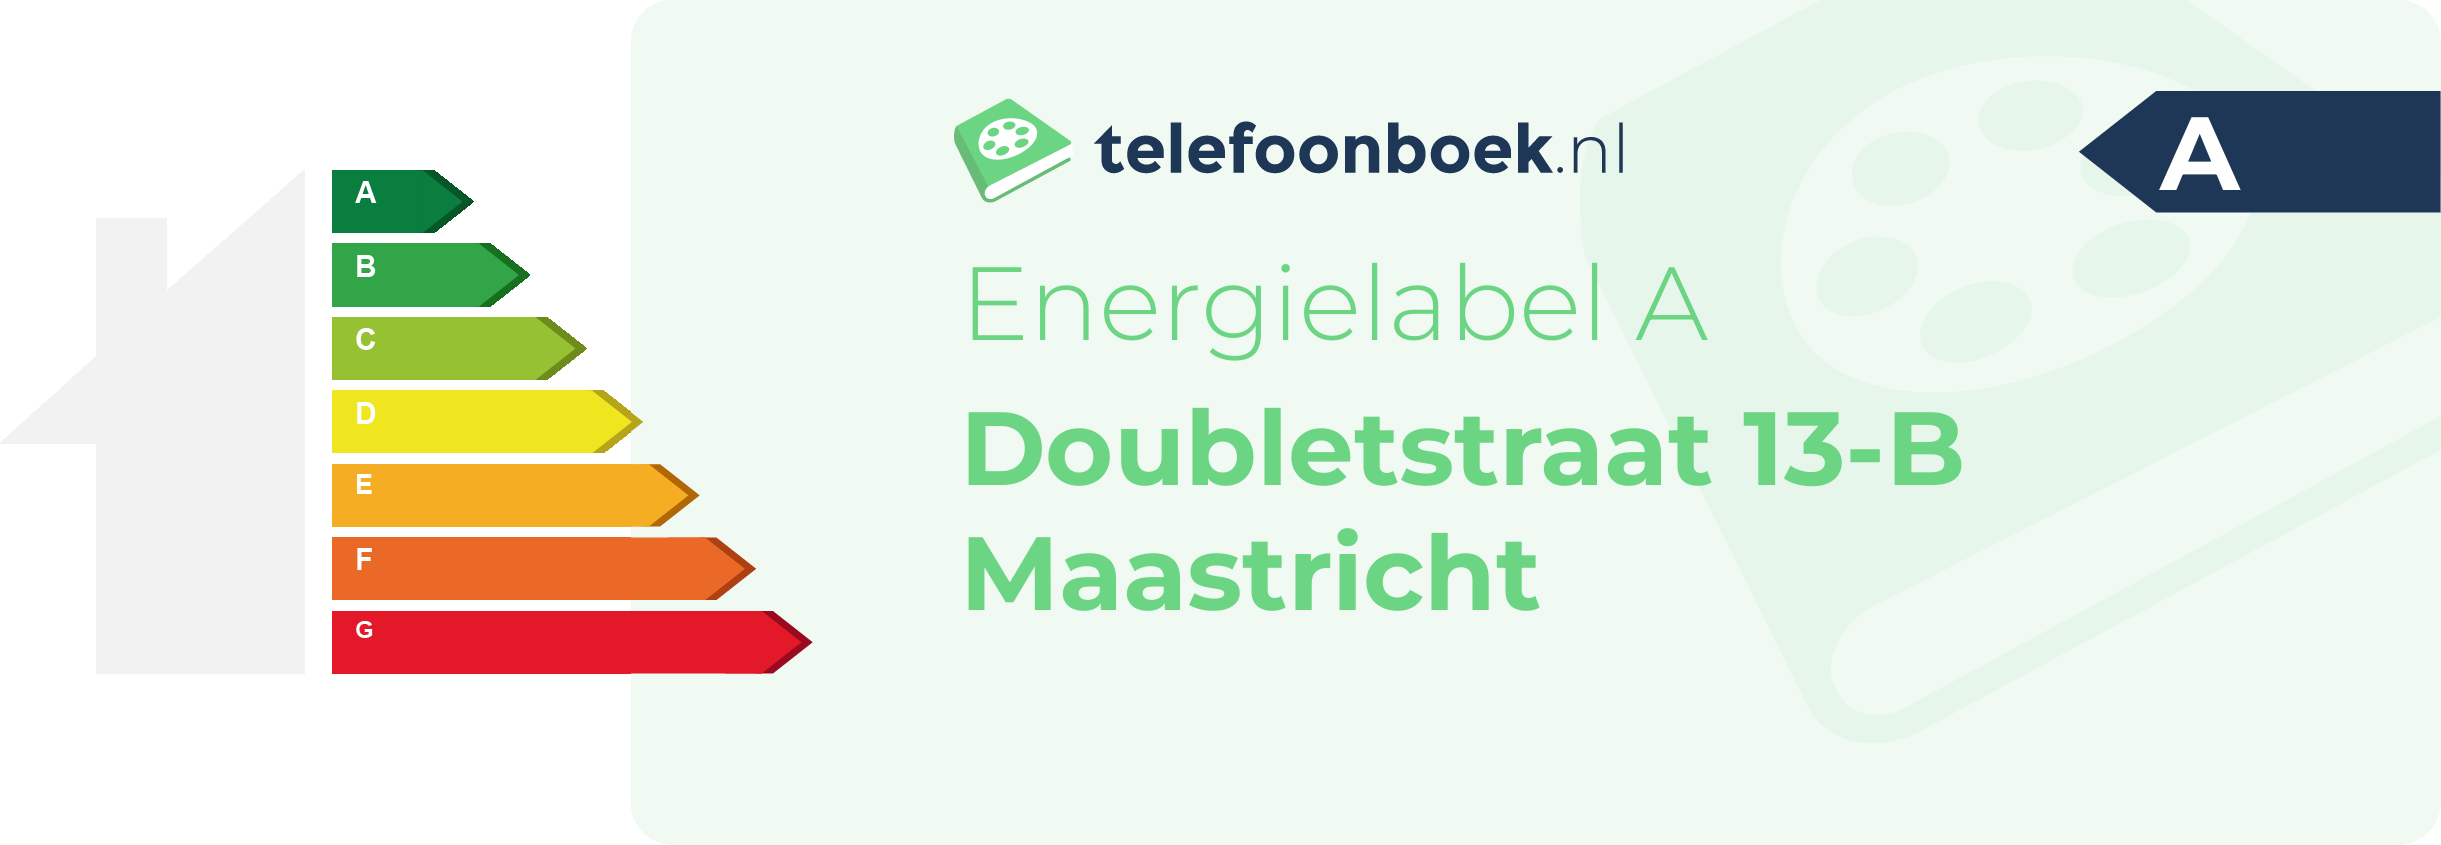 Energielabel Doubletstraat 13-B Maastricht